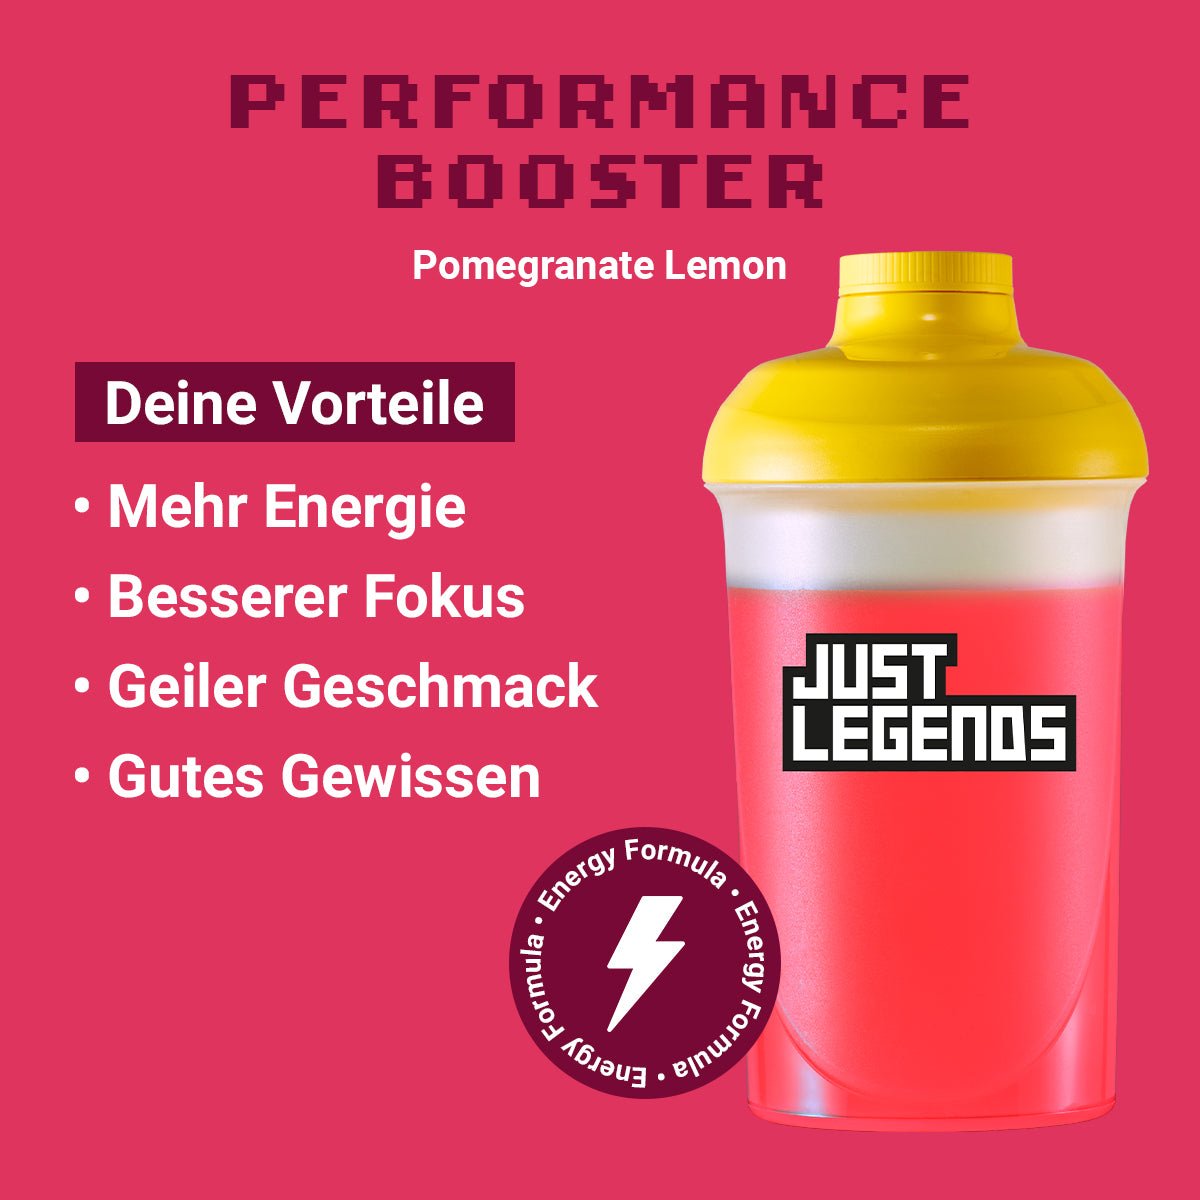 Just Legends Performance Booster Pomegranate Lemon | Funktionaler, veganer Performance Booster auf Pulverbasis ohne Zucker, mit wenig Kalorien, vielen Vitaminen und natürlichen Aromen.